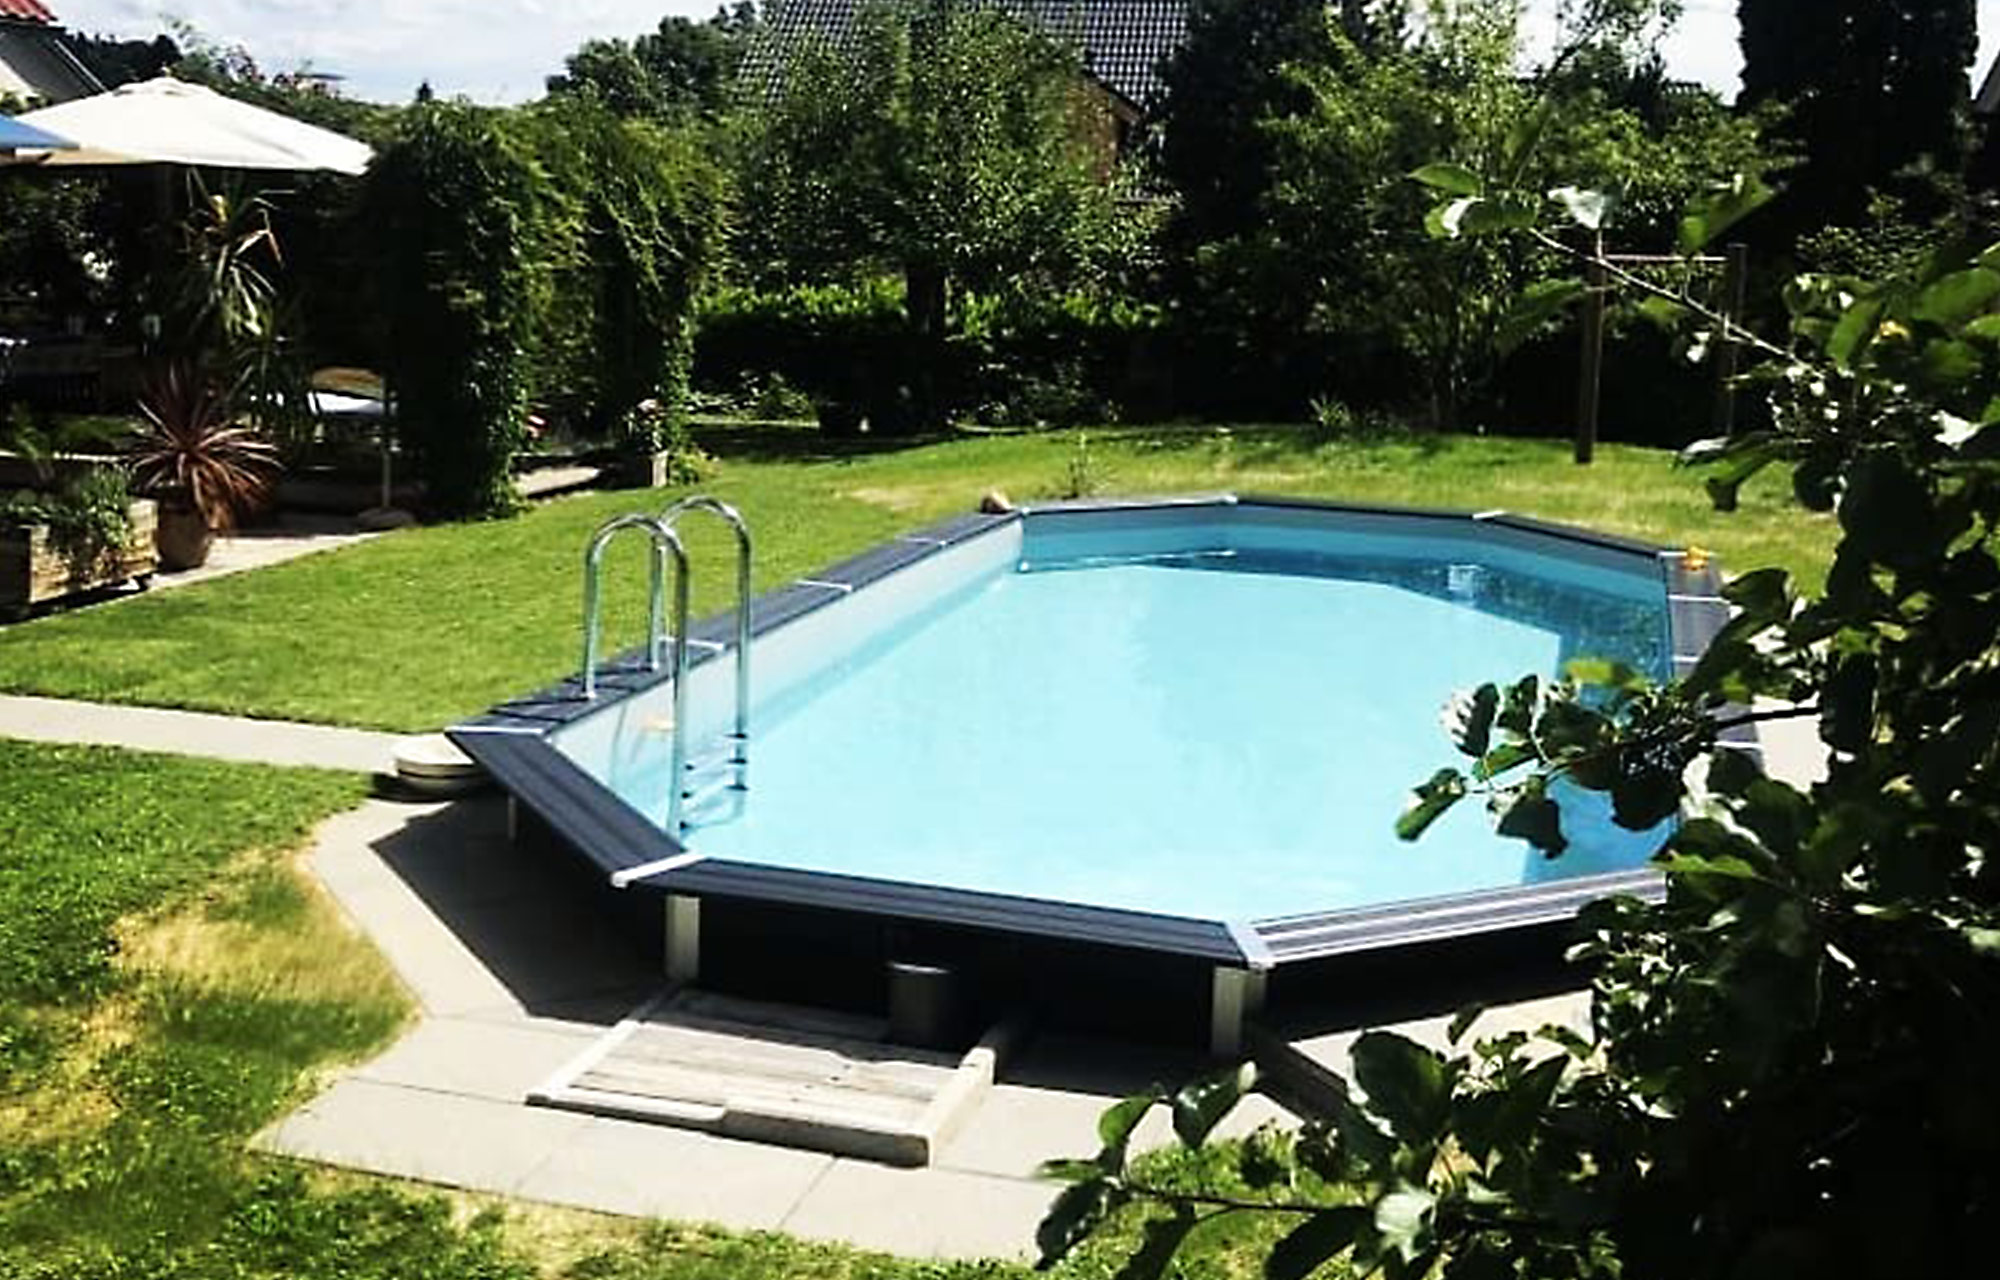 Composite Pool im Garten mit Gehweg